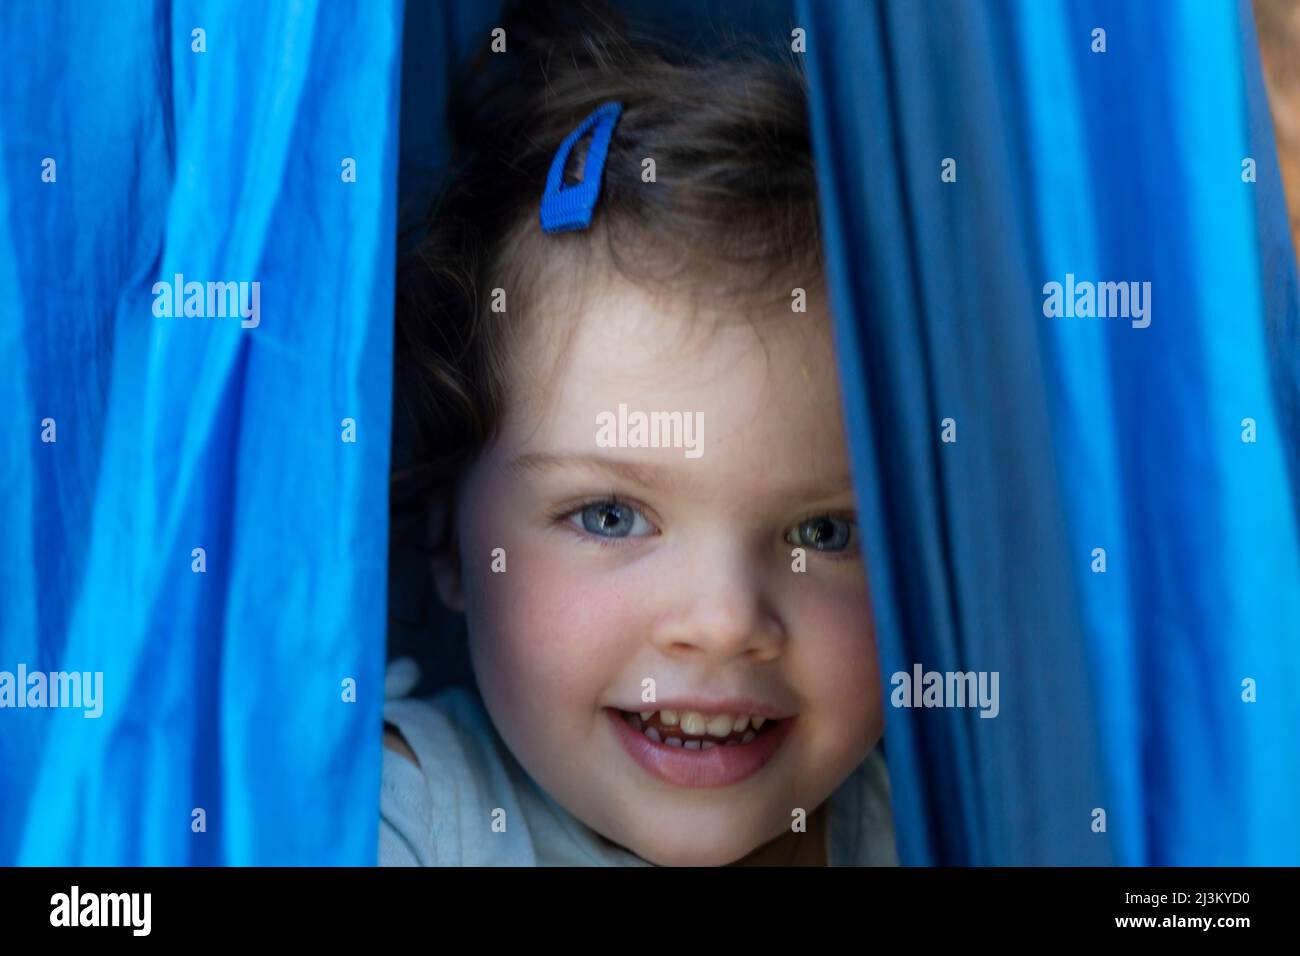 Portrait en gros plan d'une jeune fille d'avant-âge avec des yeux bleus et des joues roses qui se jettent derrière des rideaux bleus; Colombie-Britannique, Canada Banque D'Images